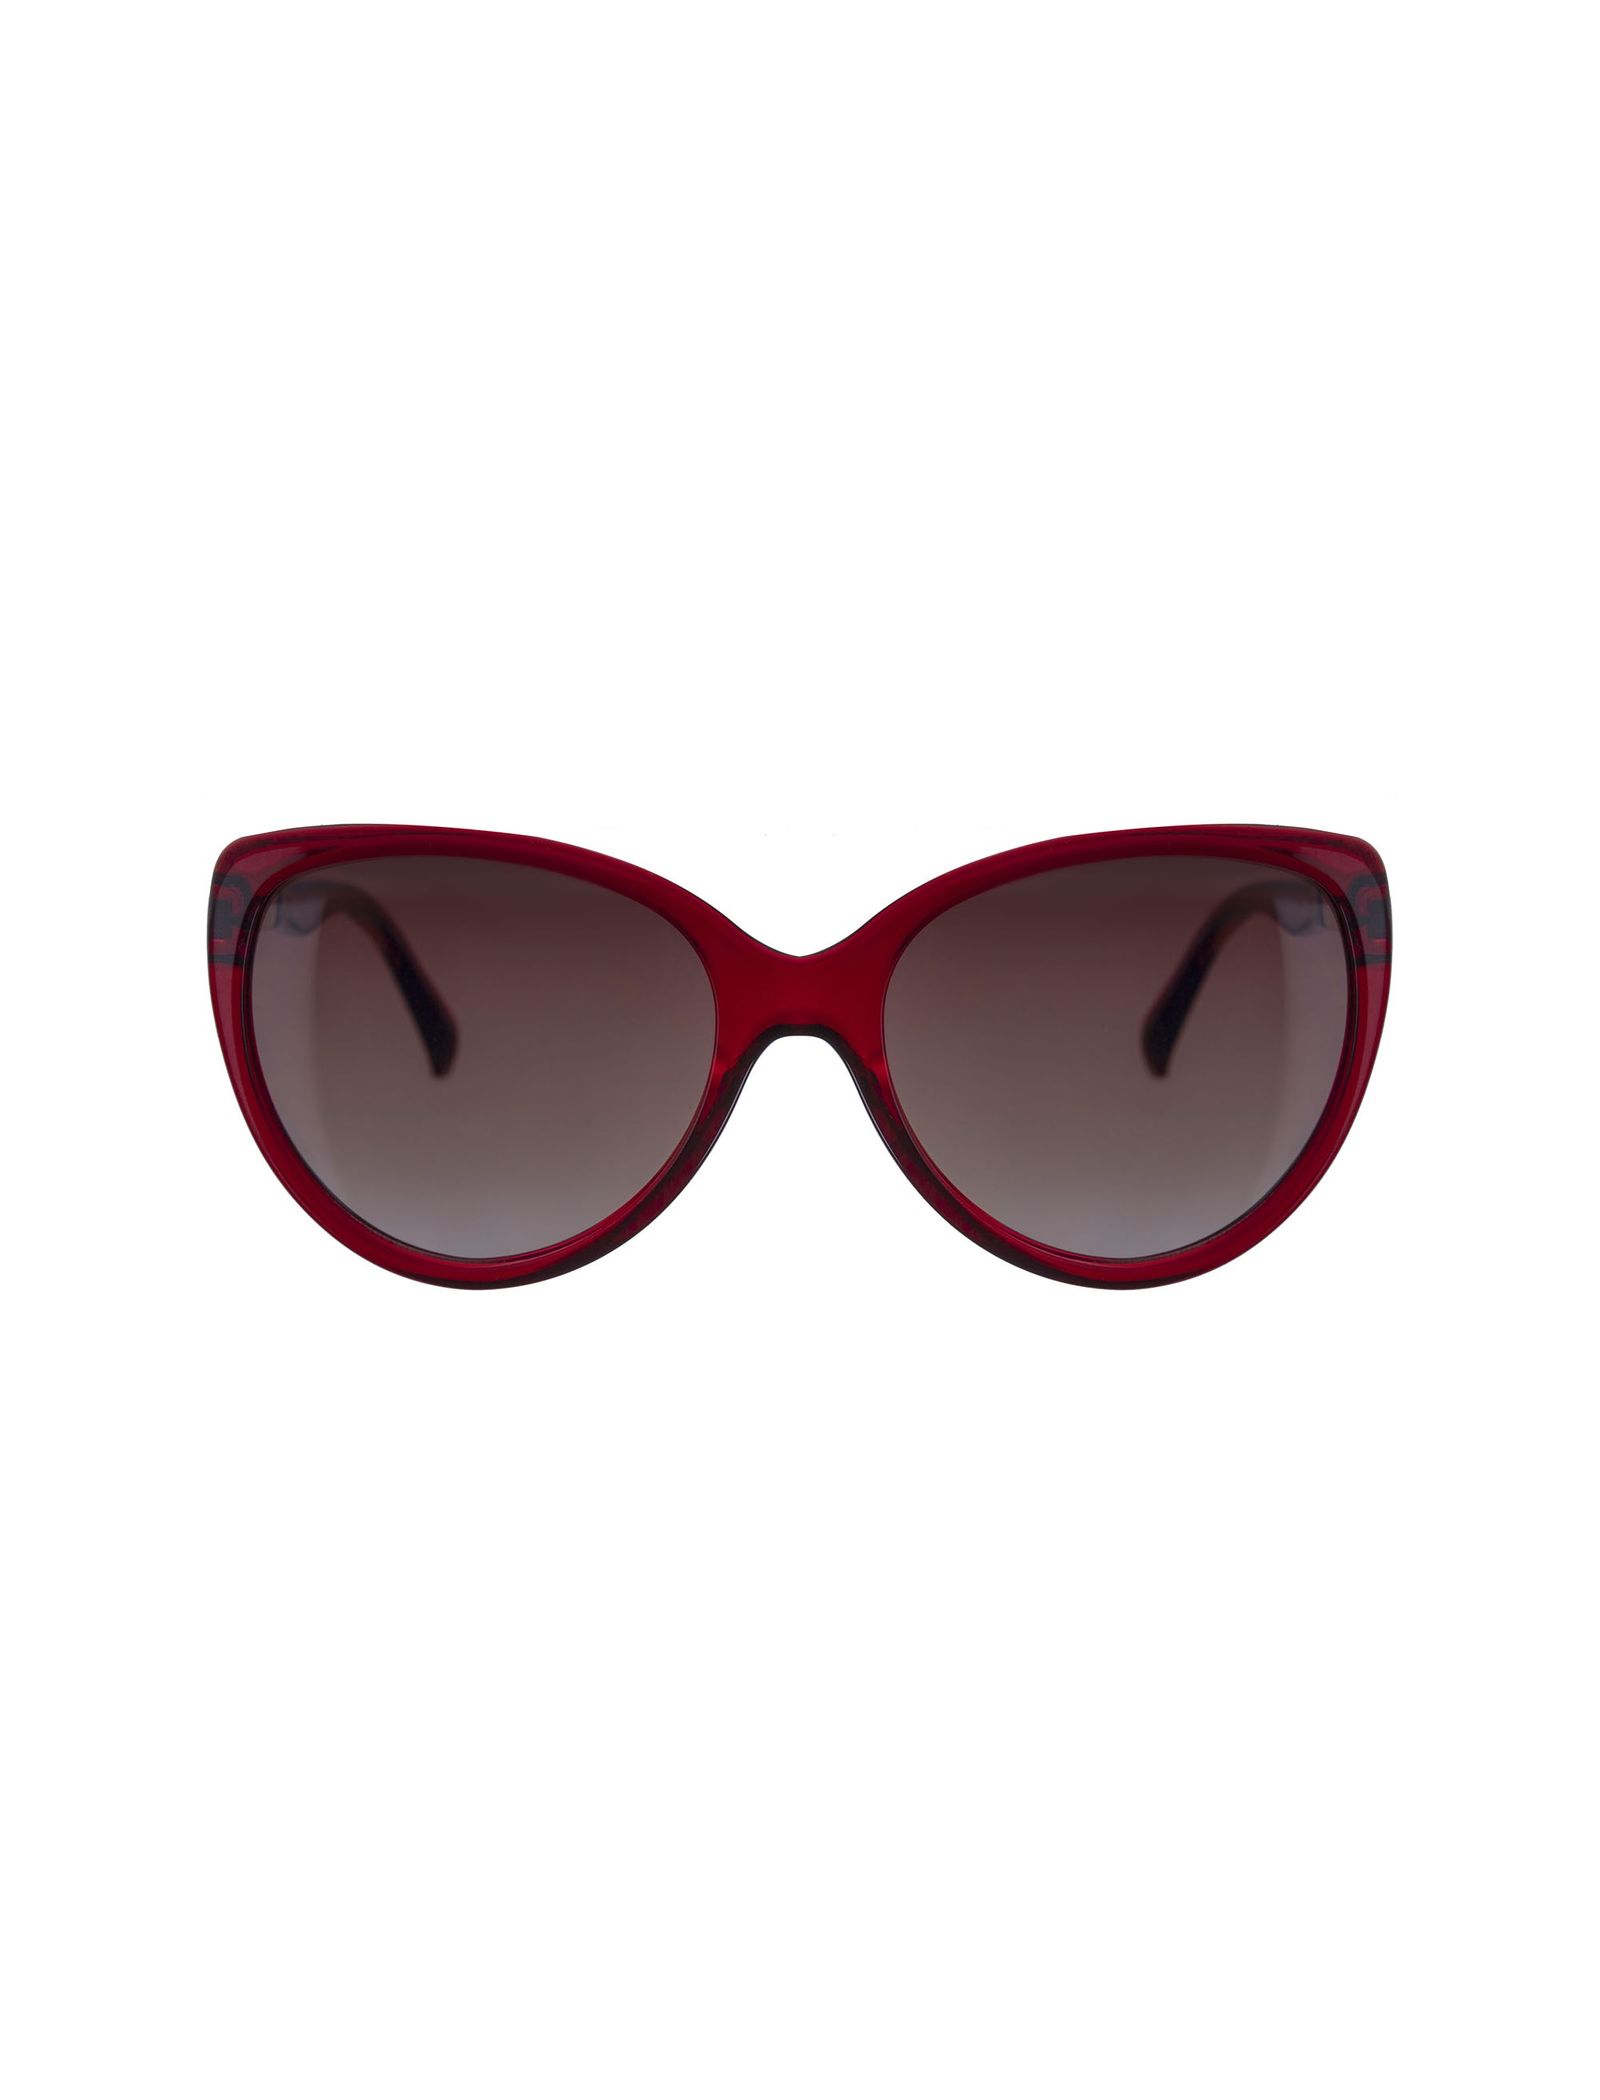 عینک آفتابی زنانه - تد بیکر - قرمز    - 1